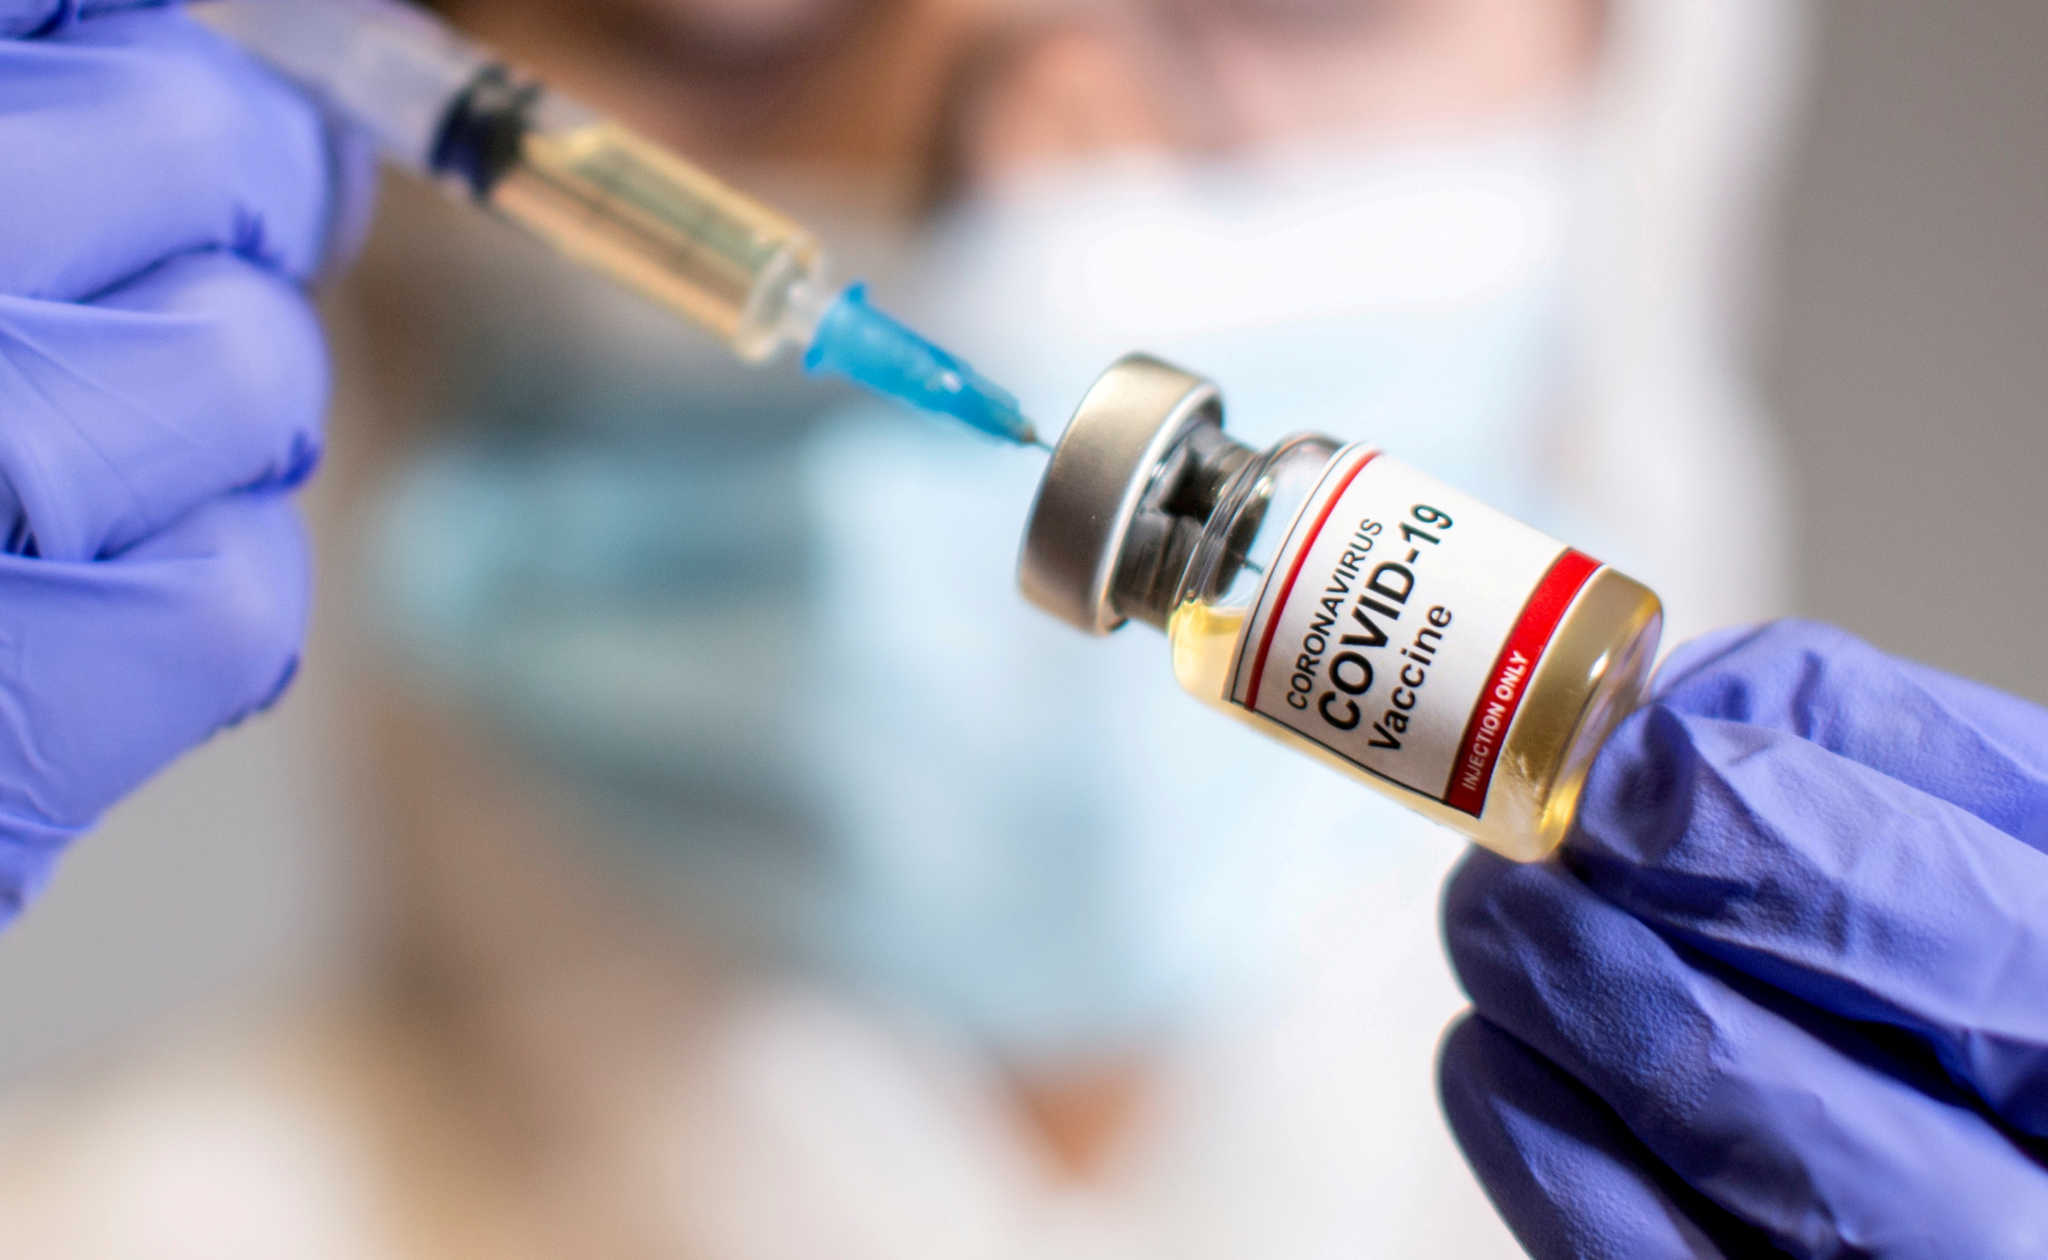 Κορονοϊός: Από μέρα σε μέρα η έγκριση εμβολίου! Τι ανακοίνωσε ο Ευρ. Οργανισμός Φαρμάκων